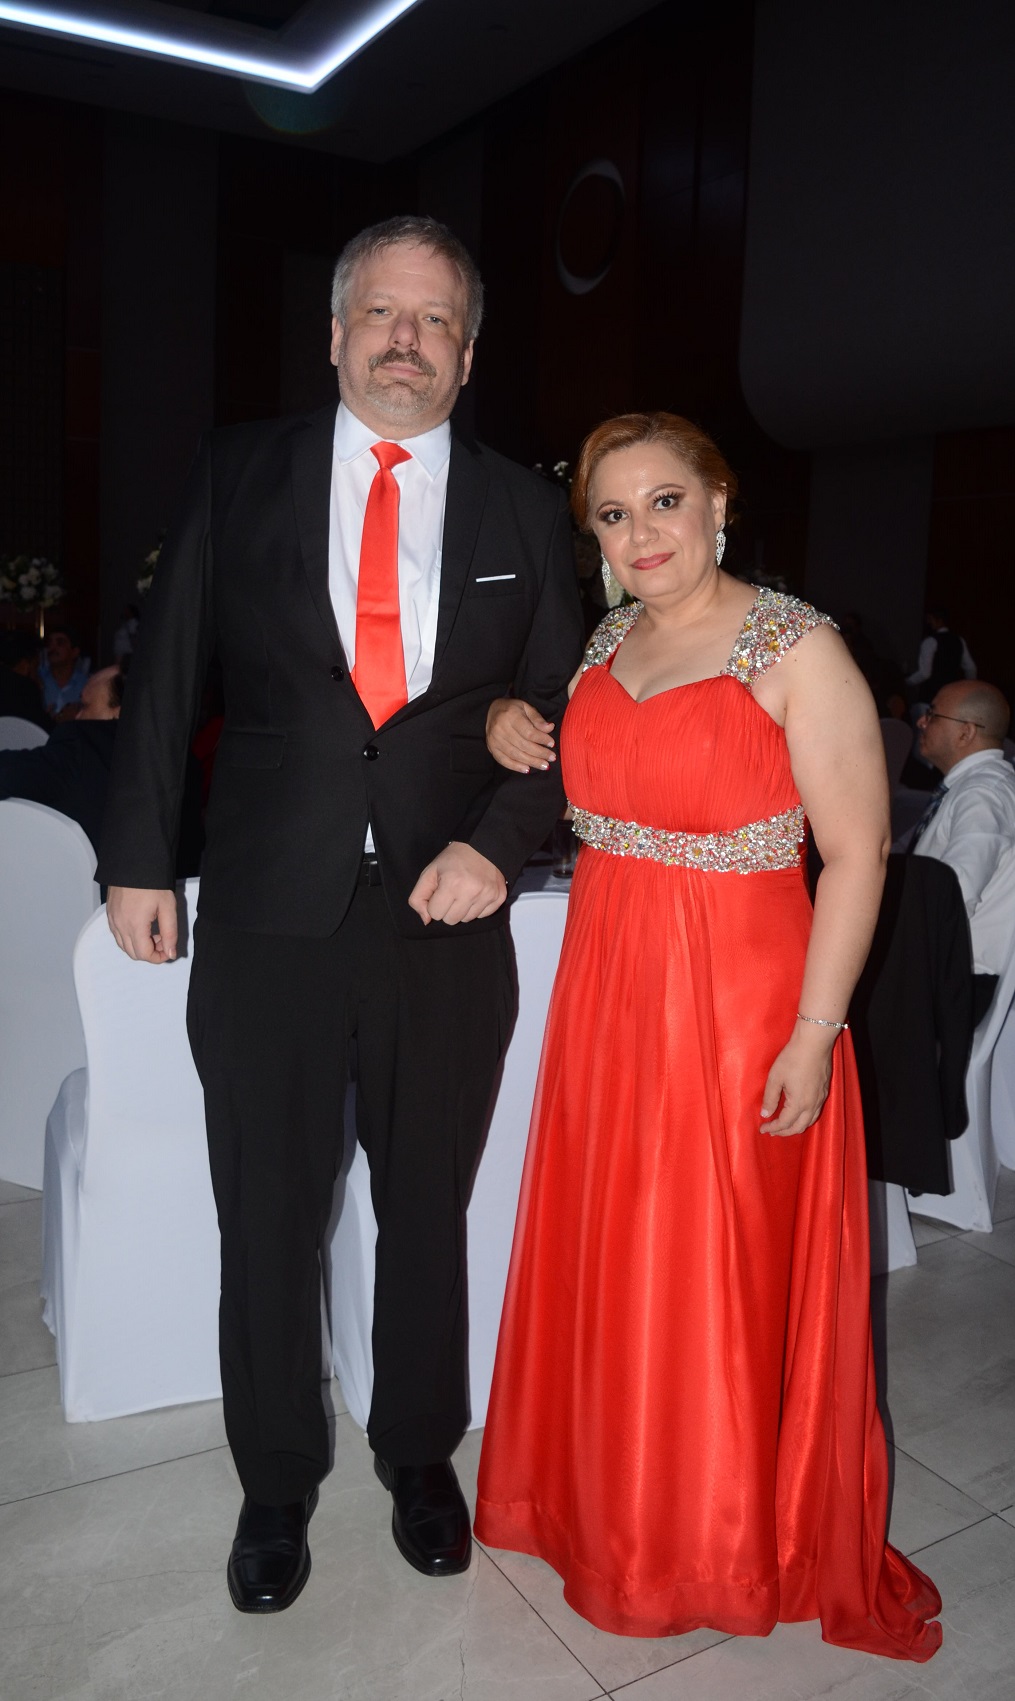 La boda de Medardo Méndez y Rocío Sierra…absoluto romanticismo 